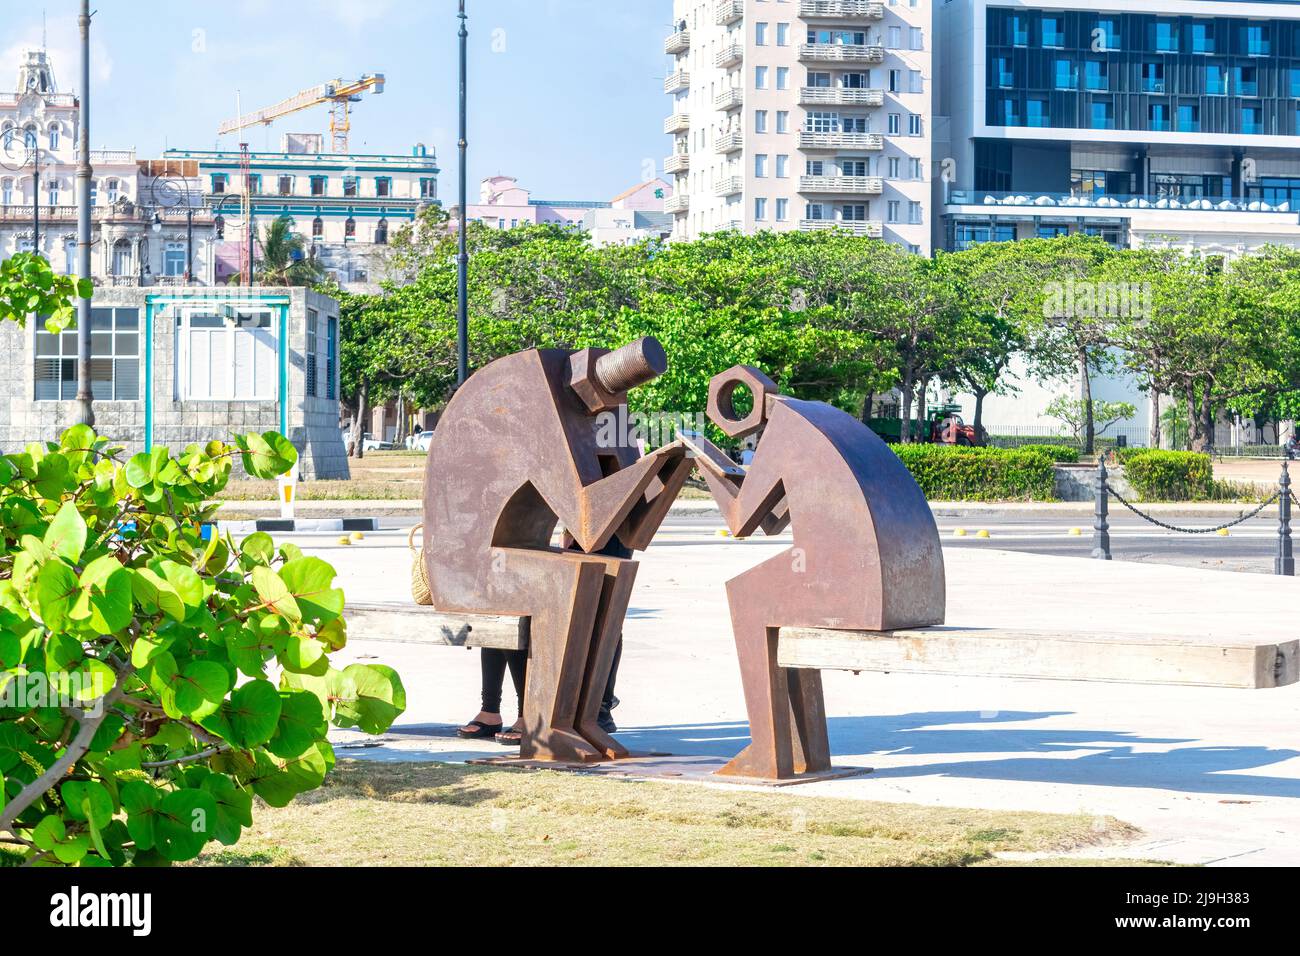 Scultura metallica contemporanea che decora la zona di Malecon. L'opera d'arte è il risultato della Biennale dell'Avana o della Bienal de la Habana. Foto Stock